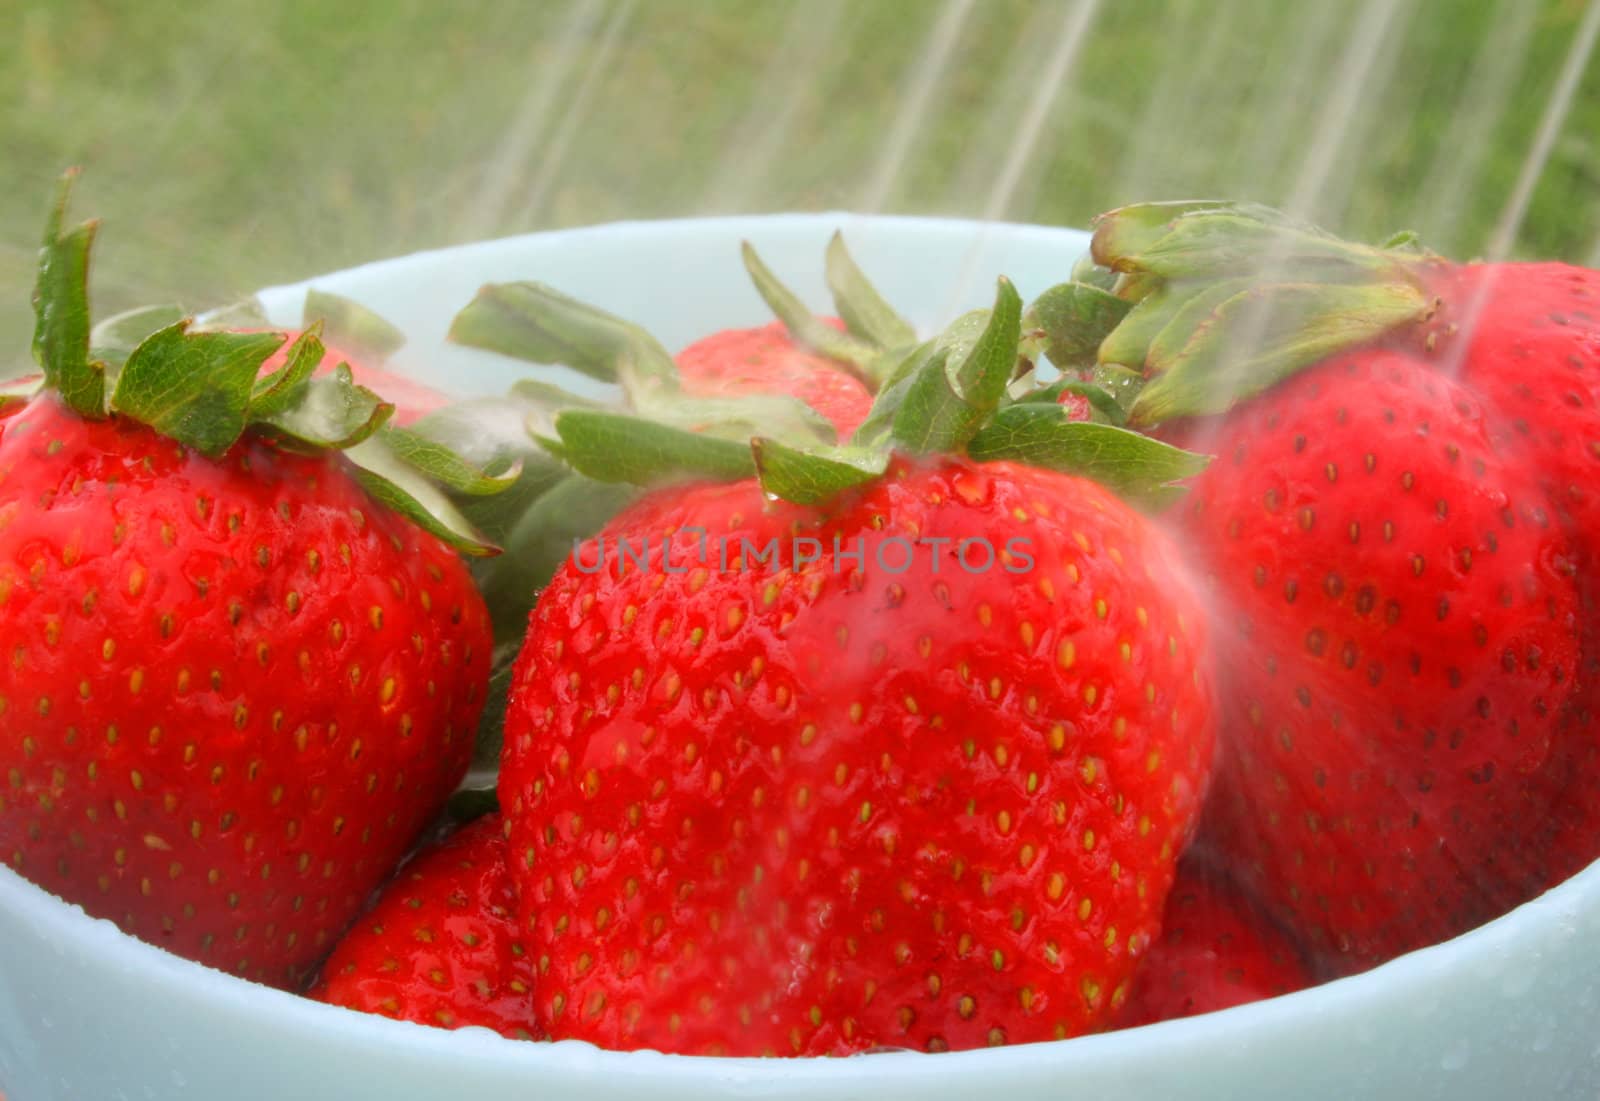 Fresh Strawberries by thephotoguy